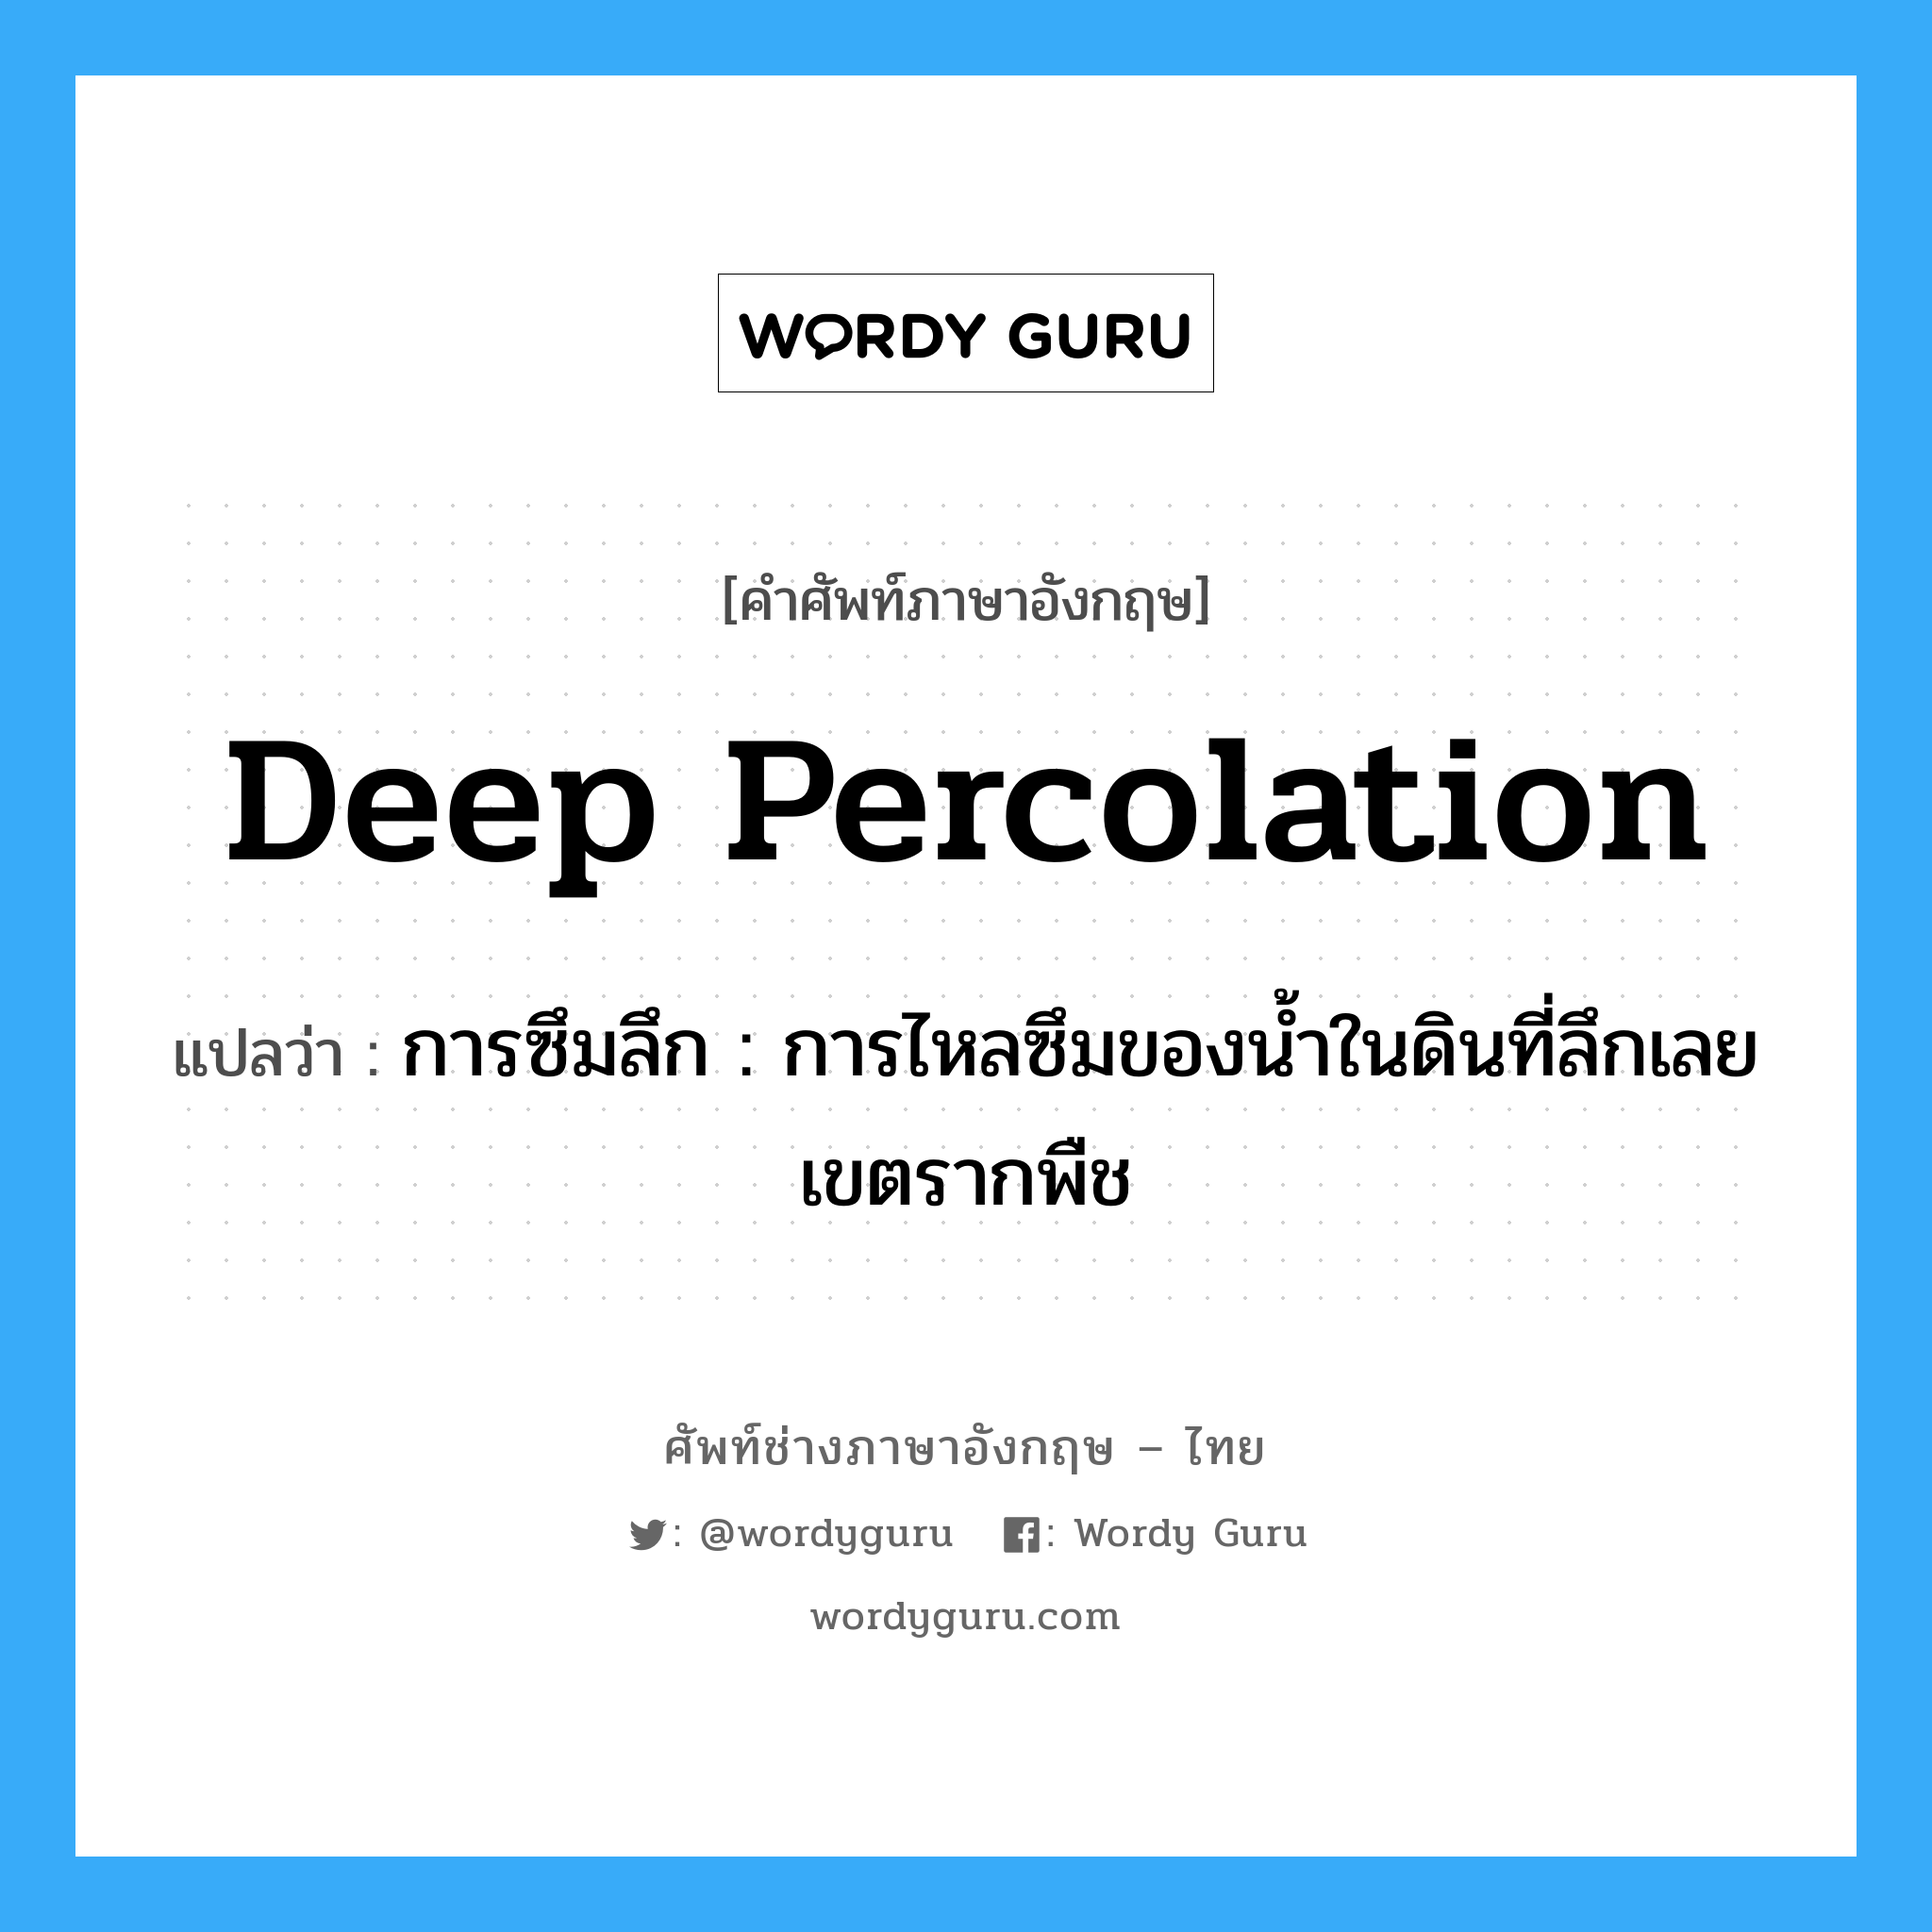 deep percolation แปลว่า?, คำศัพท์ช่างภาษาอังกฤษ - ไทย deep percolation คำศัพท์ภาษาอังกฤษ deep percolation แปลว่า การซึมลึก : การไหลซึมของน้ำในดินที่ลึกเลยเขตรากพืช